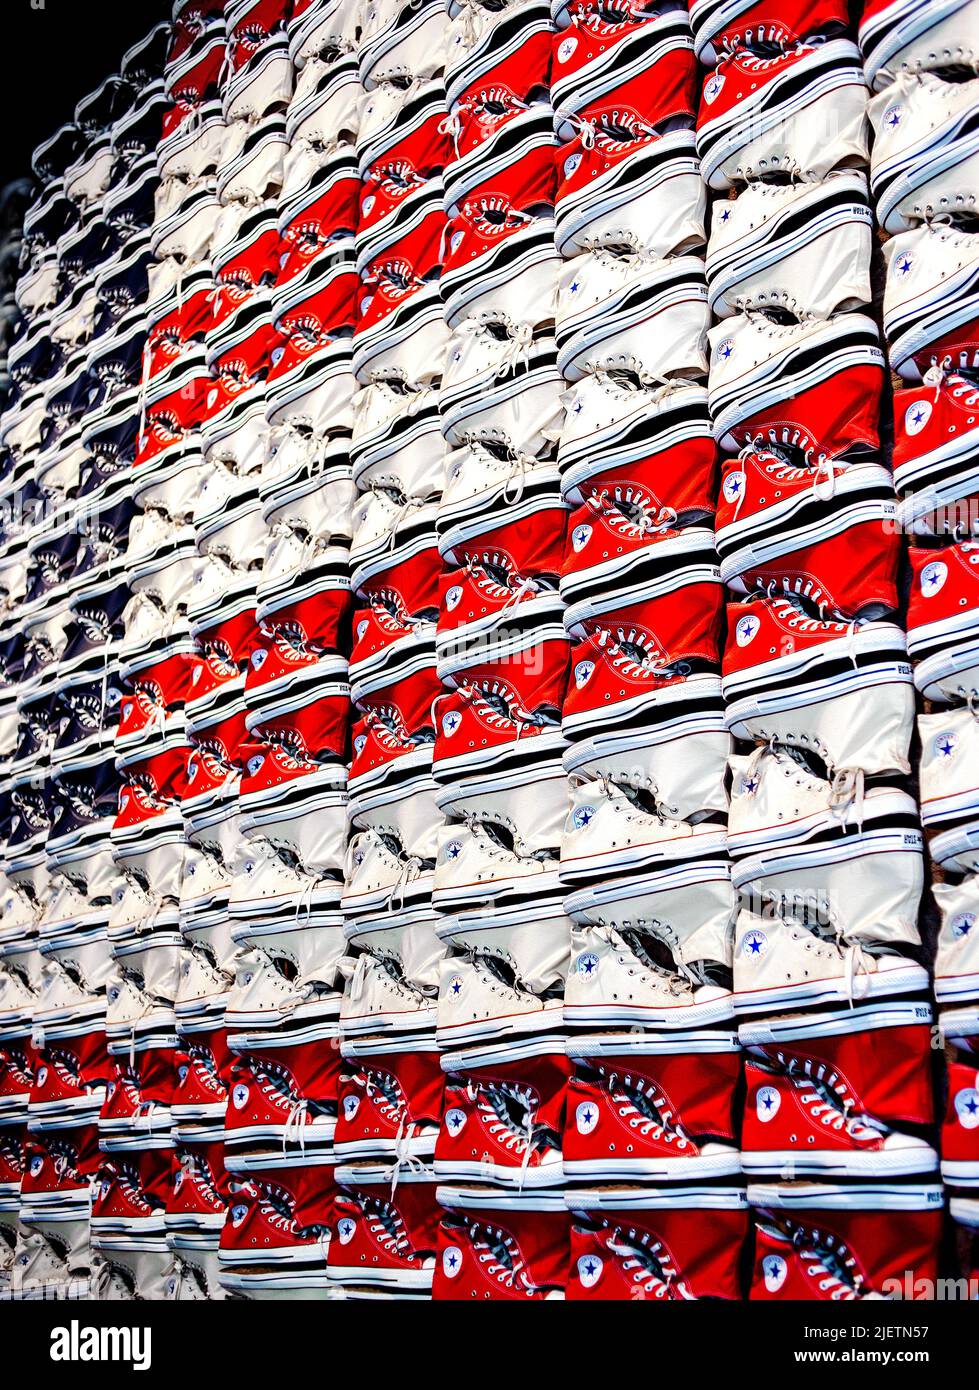 Converse All-Star Chuck Taylor Schuhe in rot-weiß und blau zu einer US-Flagge zusammengelegt Stockfoto